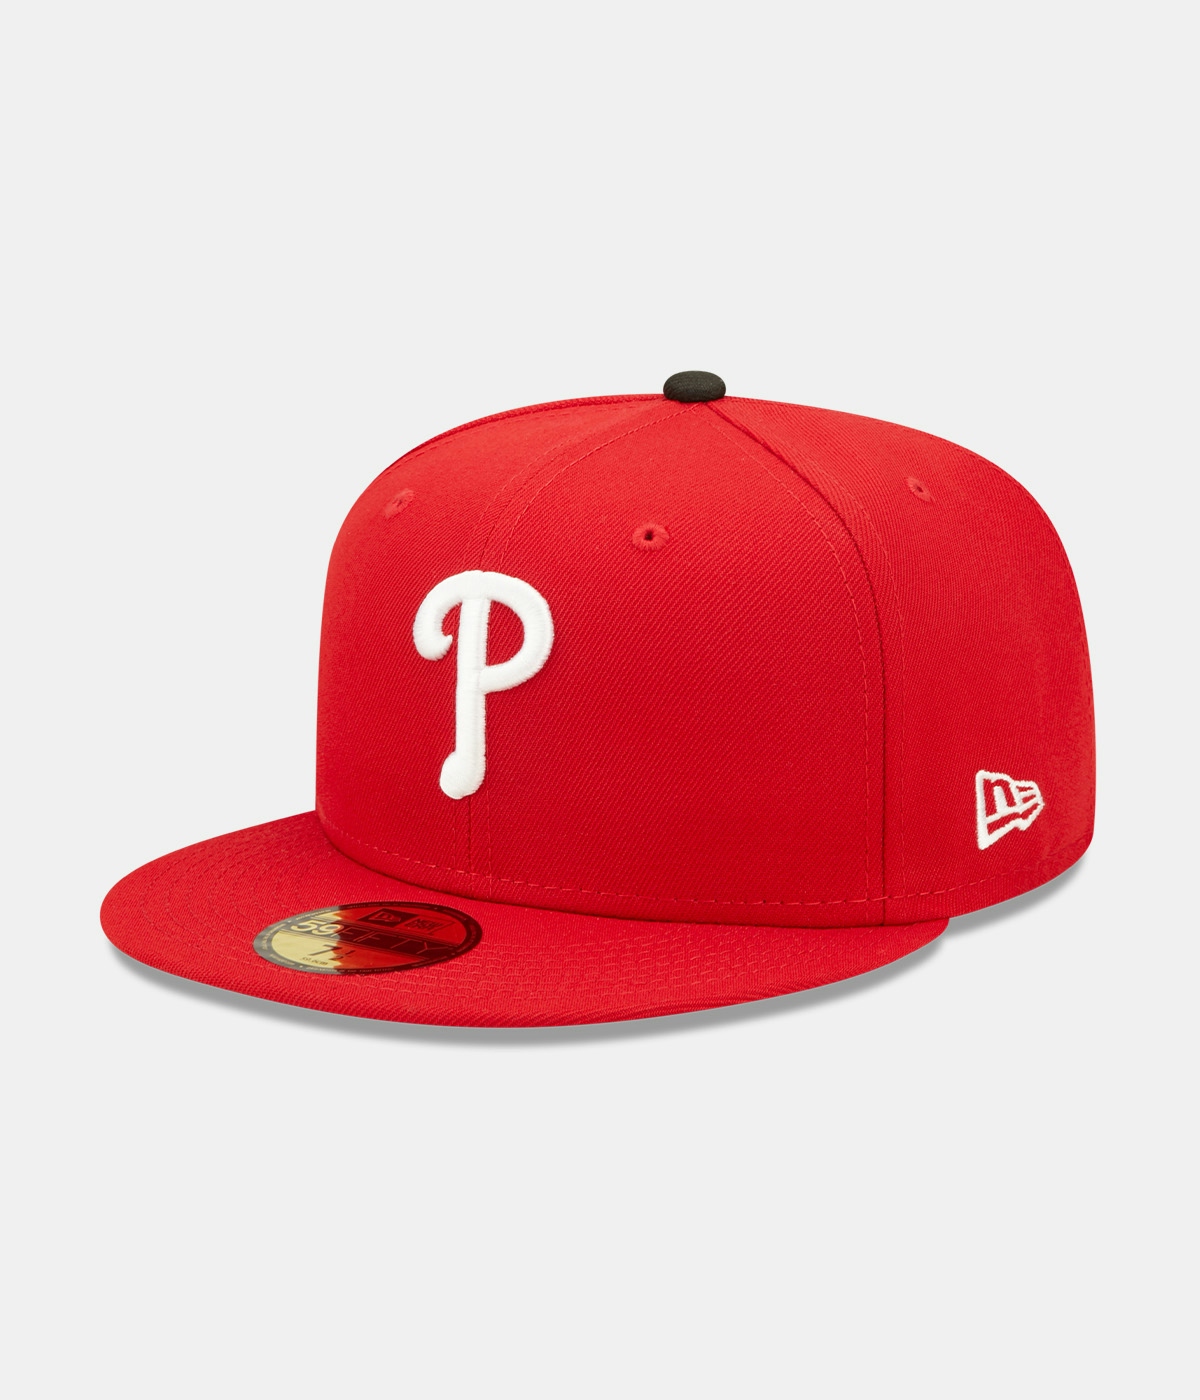 New Era Ac Perf Philadelphia Phillies 5950 Cap Red 1